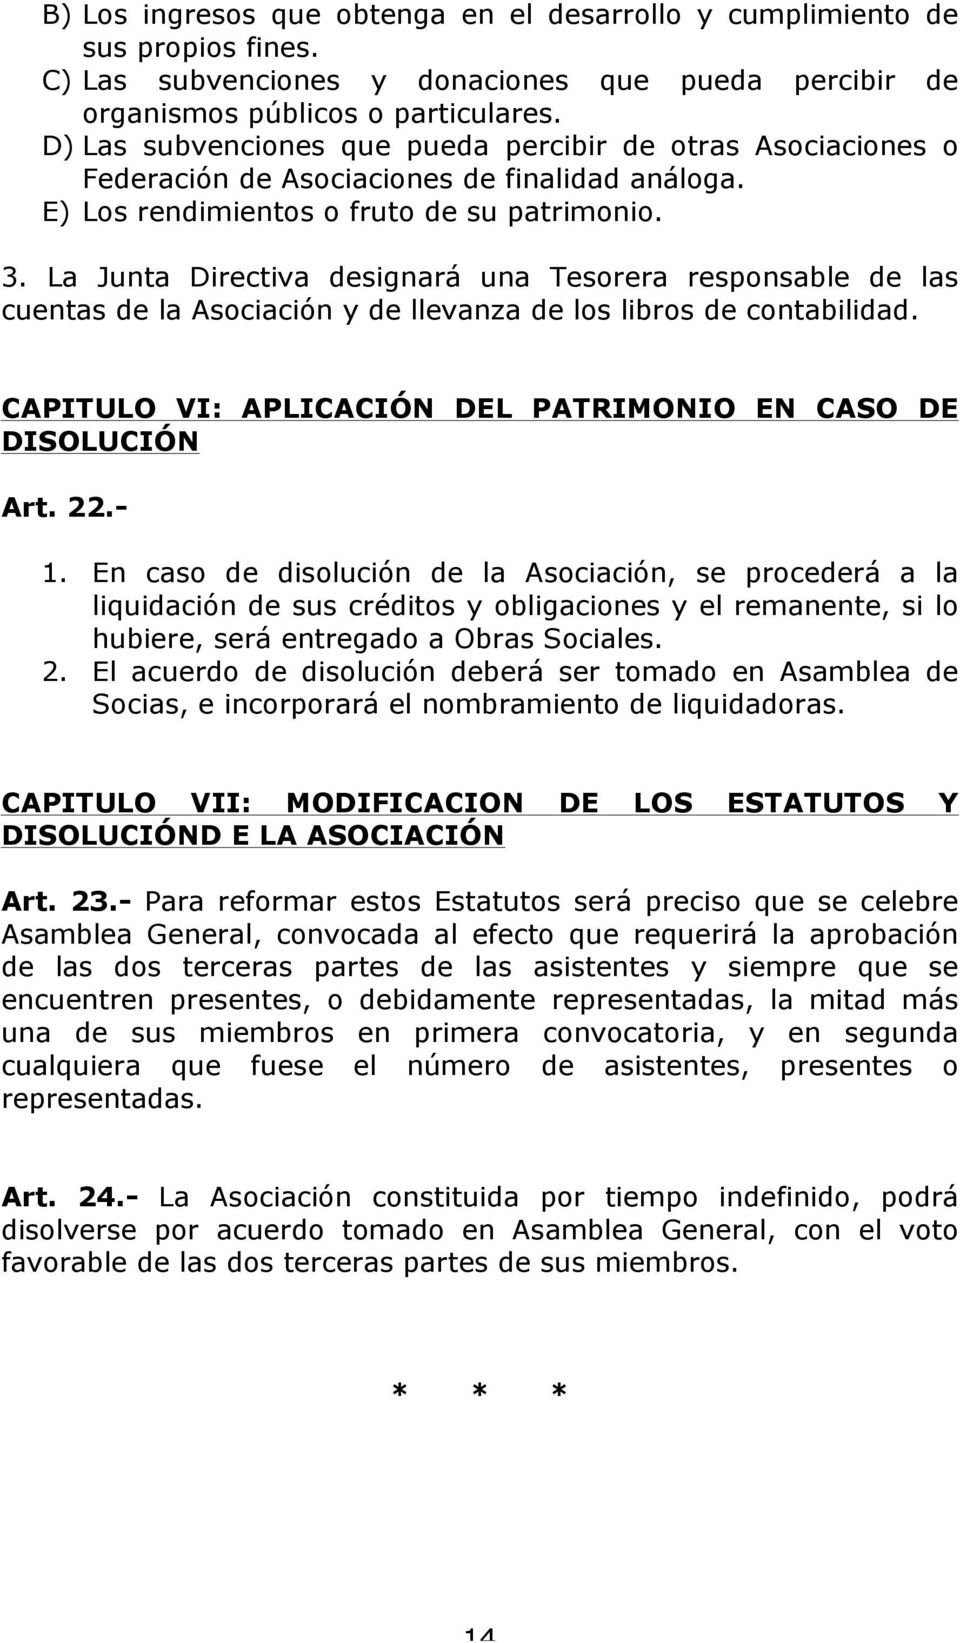 La Junta Directiva designará una Tesorera responsable de las cuentas de la Asociación y de llevanza de los libros de contabilidad. CAPITULO VI: APLICACIÓN DEL PATRIMONIO EN CASO DE DISOLUCIÓN Art. 22.